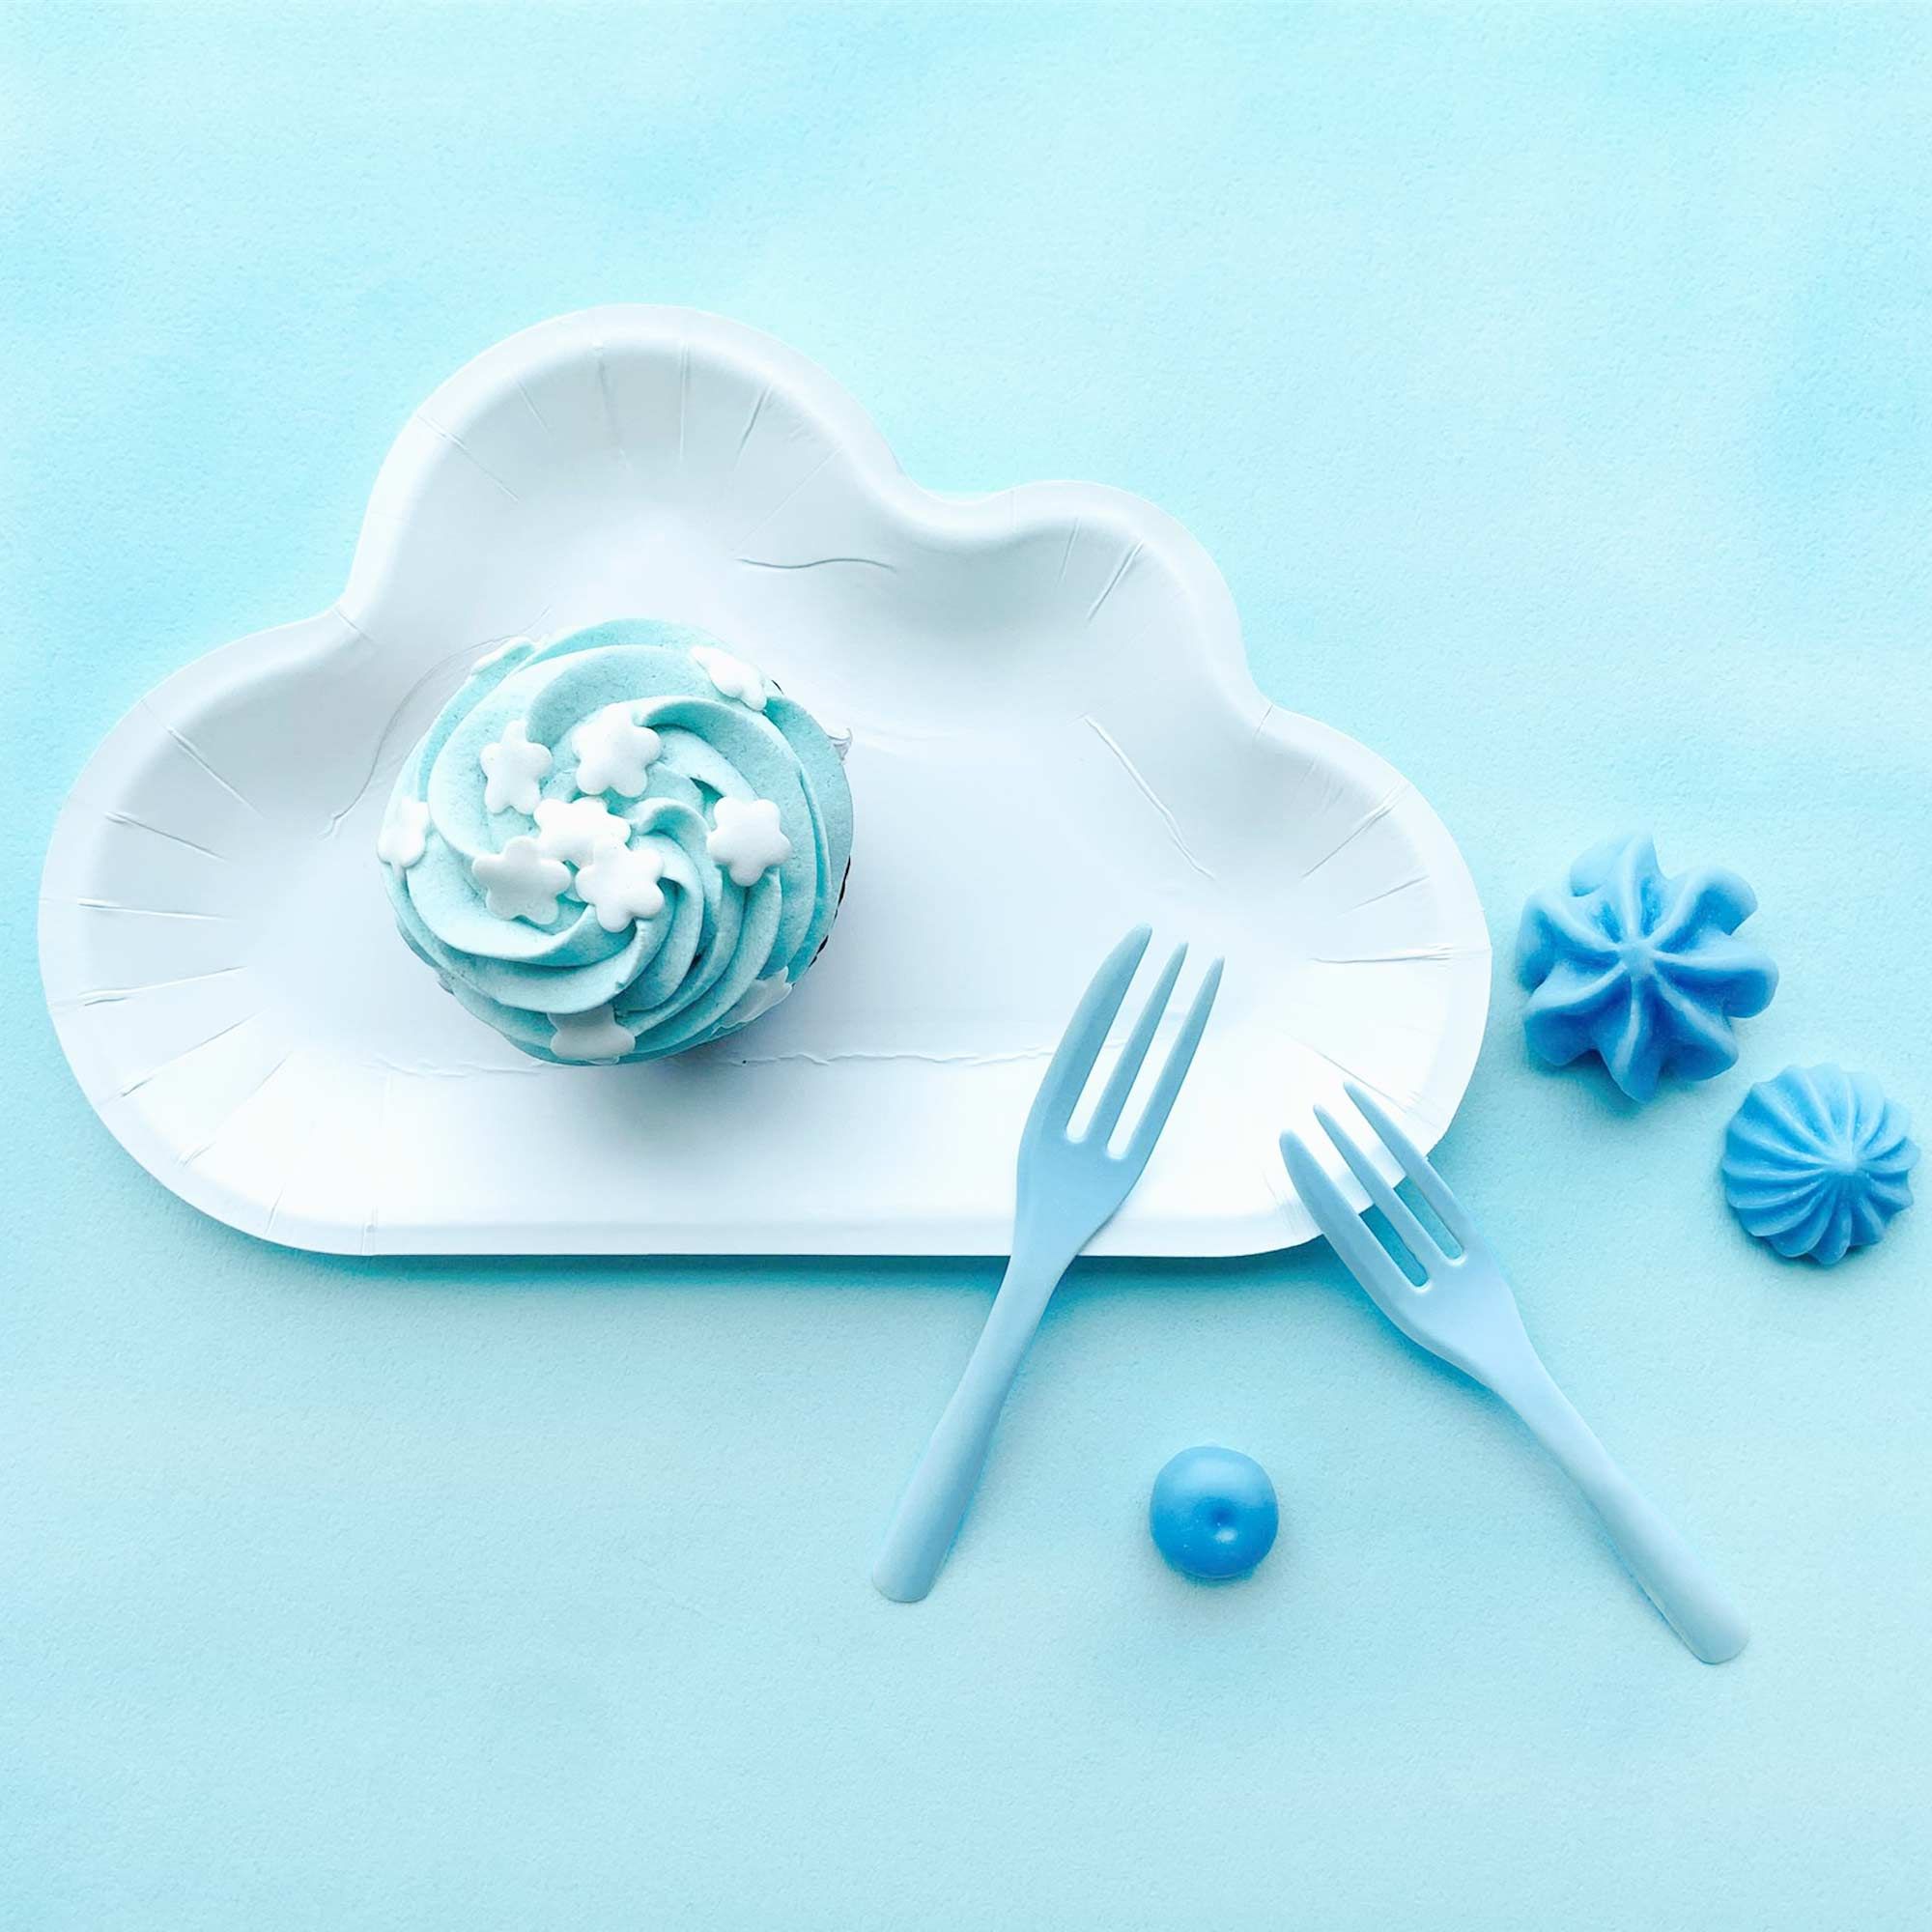 El plato en forma de nube blanca combinado con tenedores de pastel azules crea una atmósfera que recuerda a un cielo azul con nubes esponjosas.